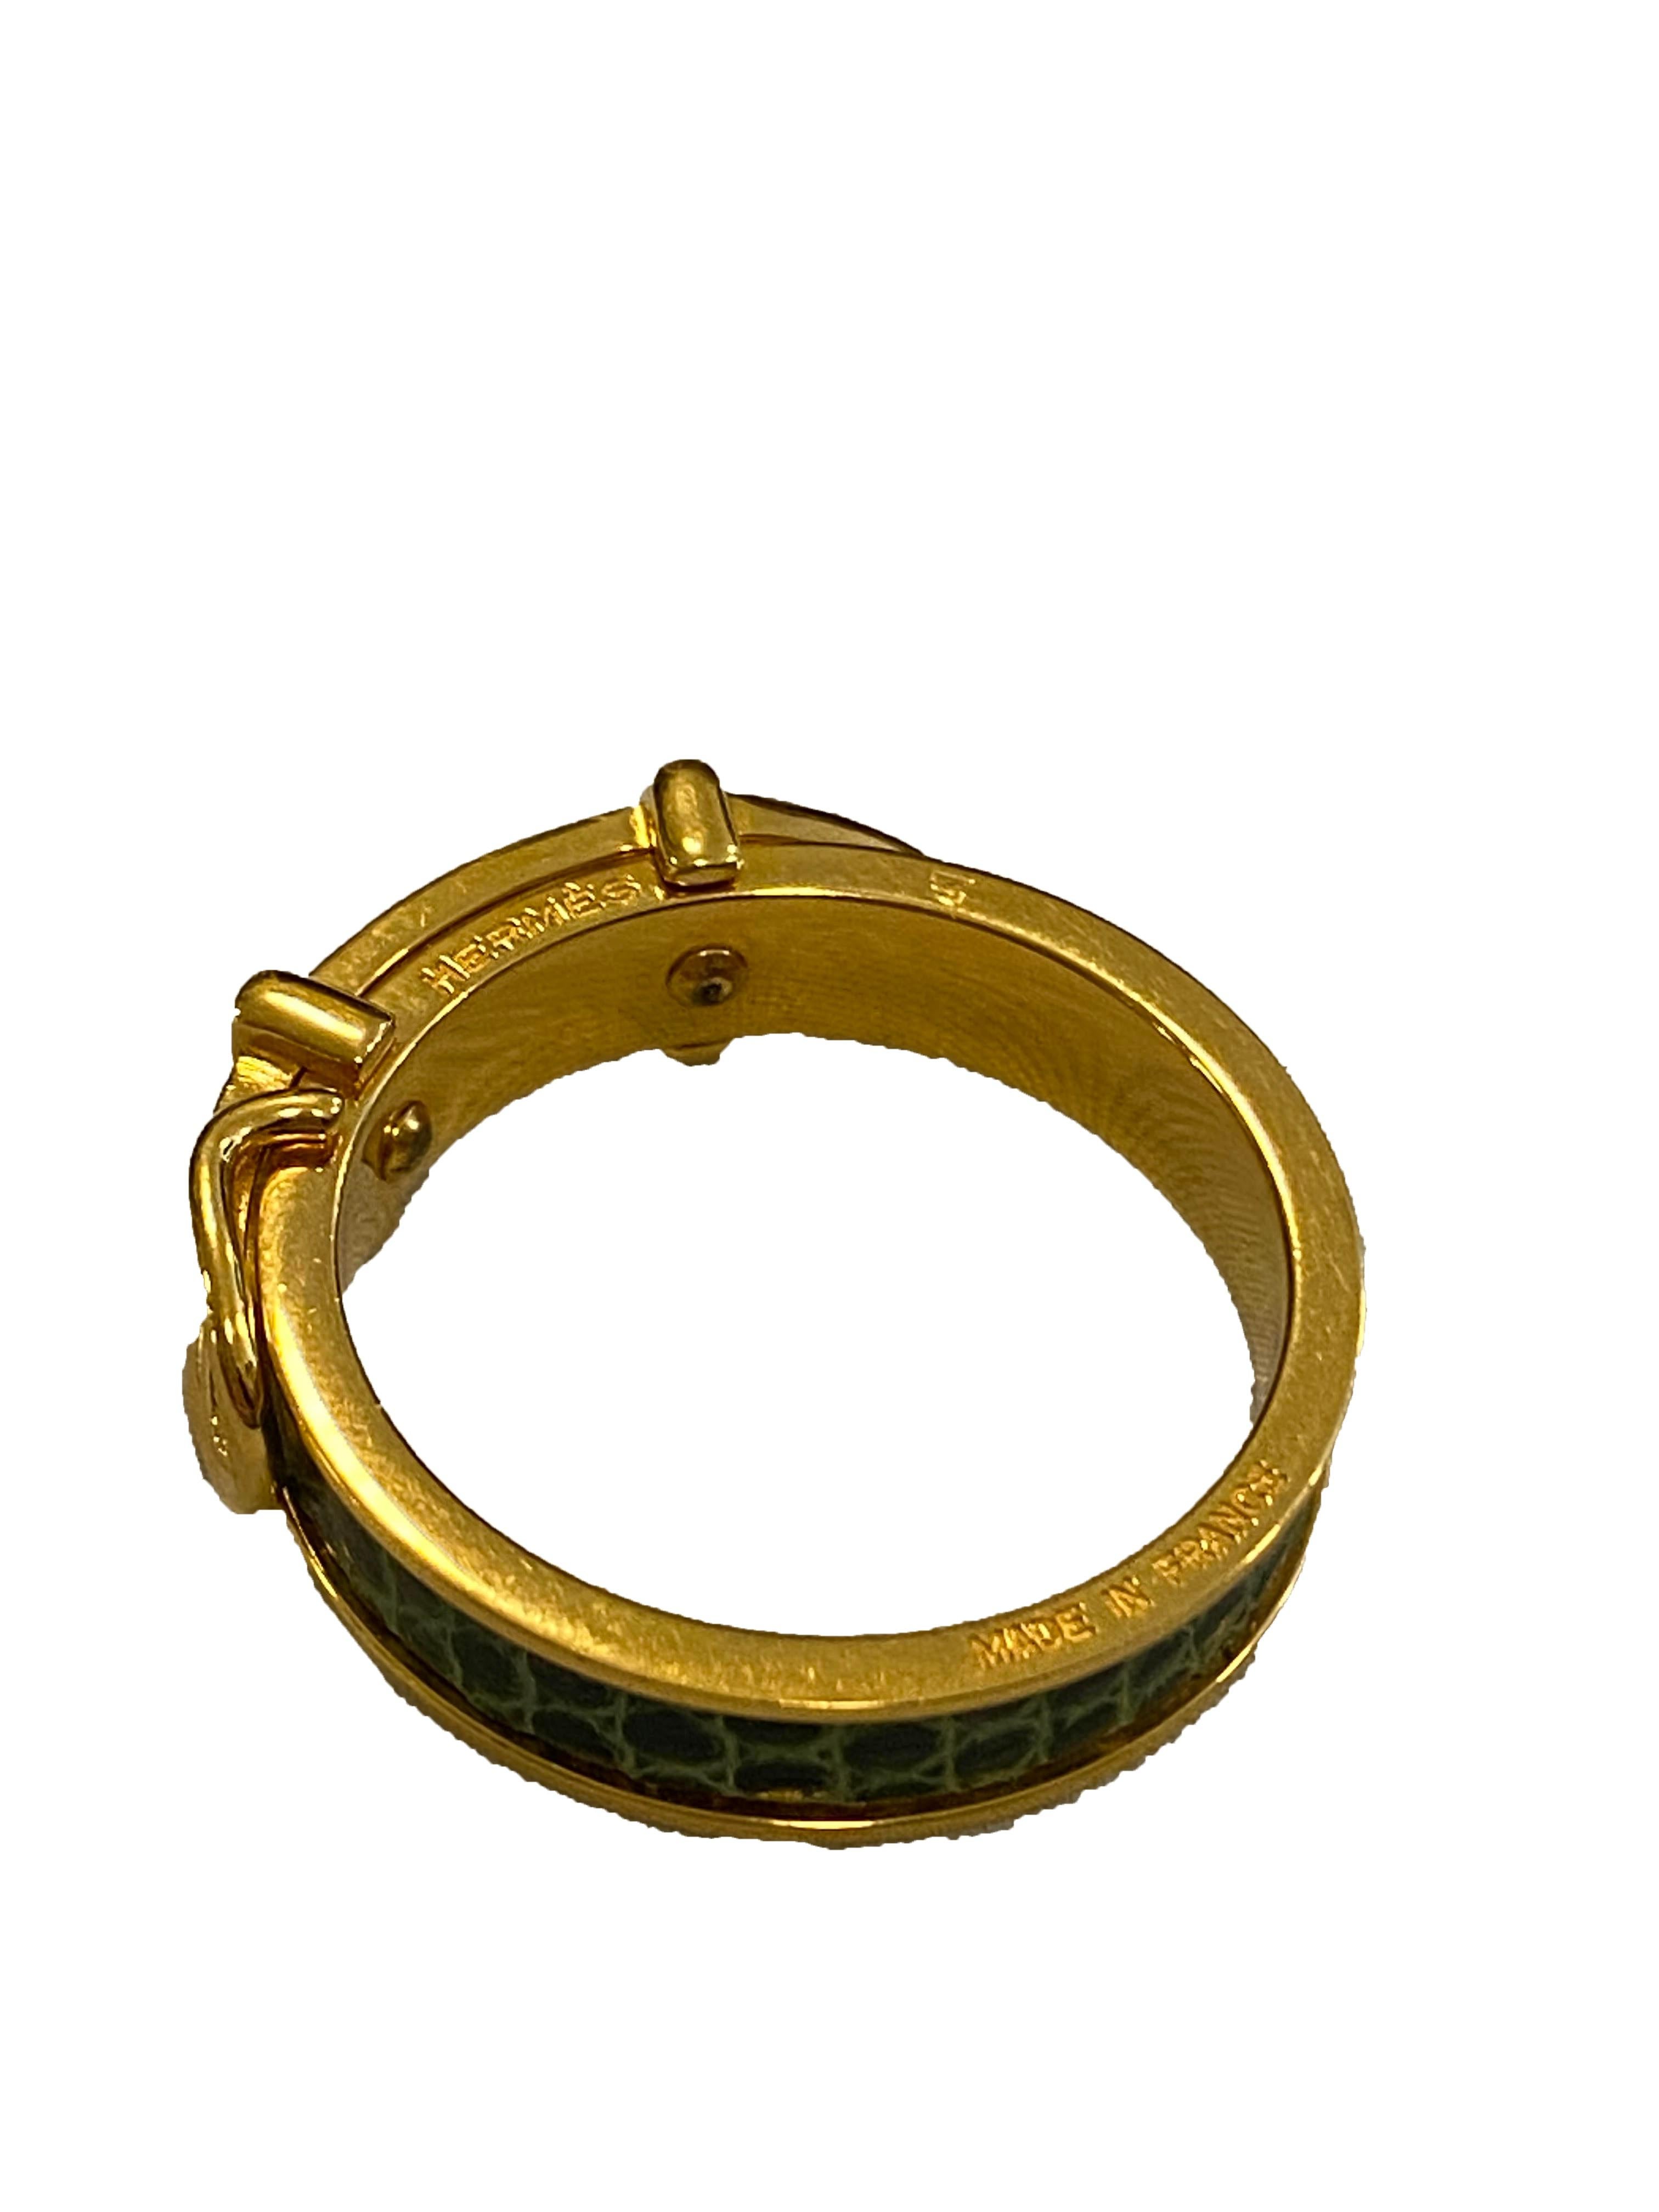 Anneau en forme de ceinture pour foulard de Hermès. Bracelet en cuir gaufré python vert avec boucle en métal doré. Marqué 